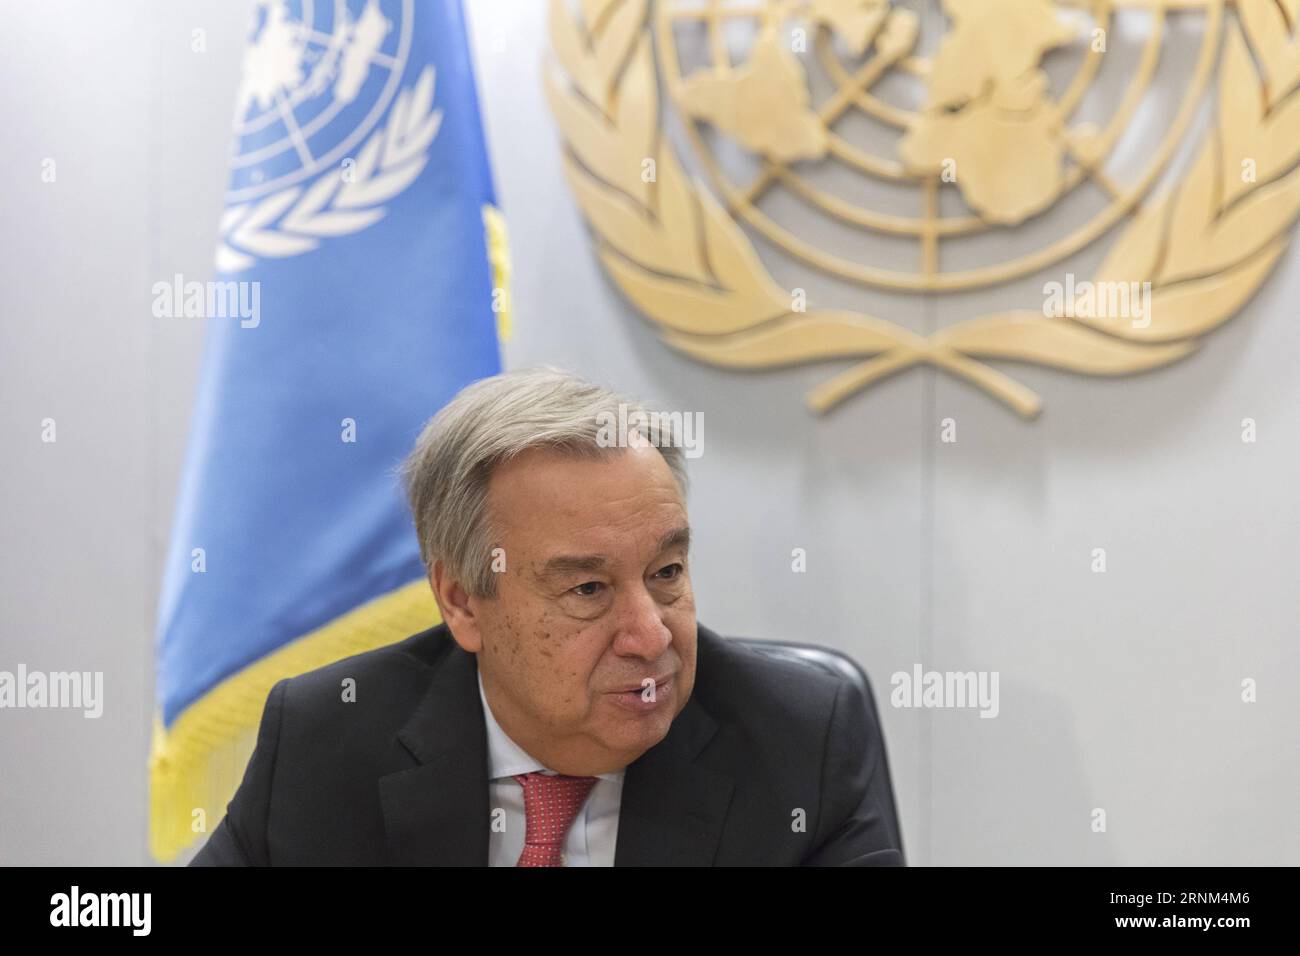 (170509) -- NATIONS UNIES, 9 mai 2017 -- le secrétaire général des Nations Unies Antonio Guterres s'exprime lors d'une entrevue avec des médias chinois basés aux Nations Unies au siège de l'ONU à New York, le 8 mai 2017. M. Guterres a salué lundi l Initiative de la ceinture et de la route de la Chine, affirmant que la Chine joue un rôle très central à travers elle dans l unification du monde pour relever les défis mondiaux actuels de développement. (Zjy) SECRÉTAIRE GÉNÉRAL des Nations Unies-GUTERRES-INTERVIEW LixMuzi PUBLICATIONxNOTxINxCHN Nations Unies Mai 9 2017 le Secrétaire général des Nations Unies Antonio Guterres s'exprime lors d'une interview avec Chin basé à l'ONU Banque D'Images